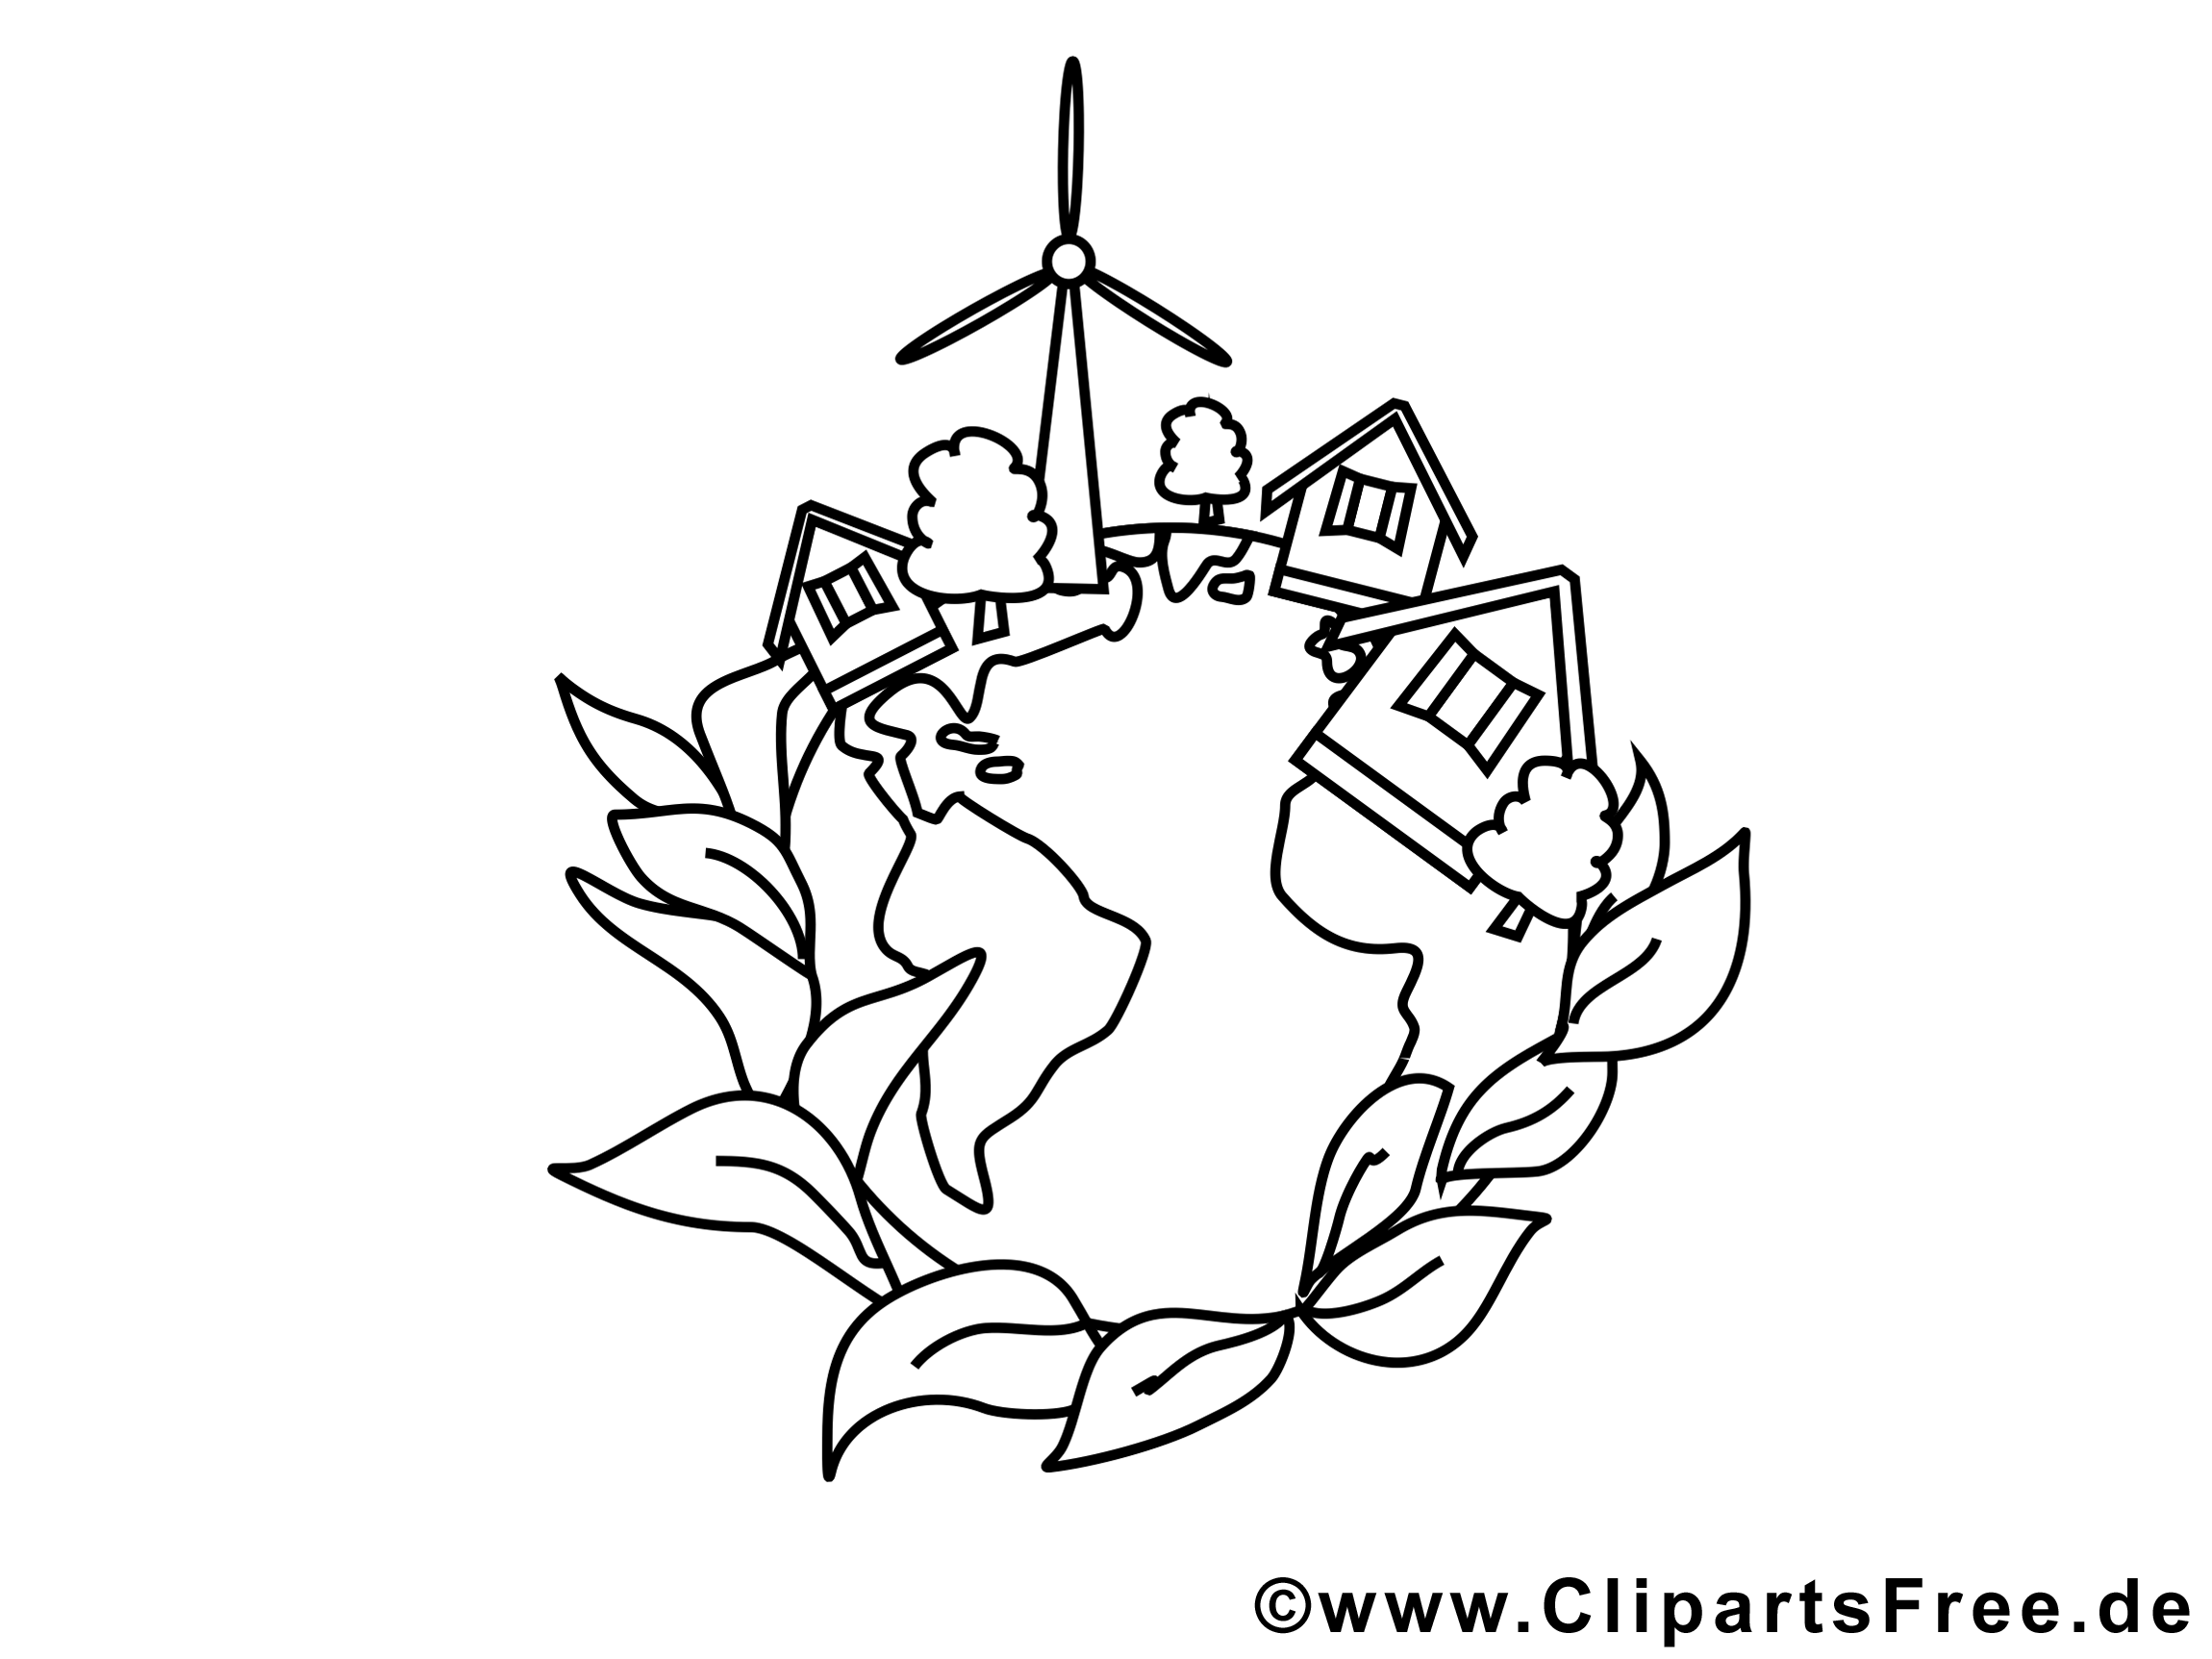 Village clipart – École dessins à colorier